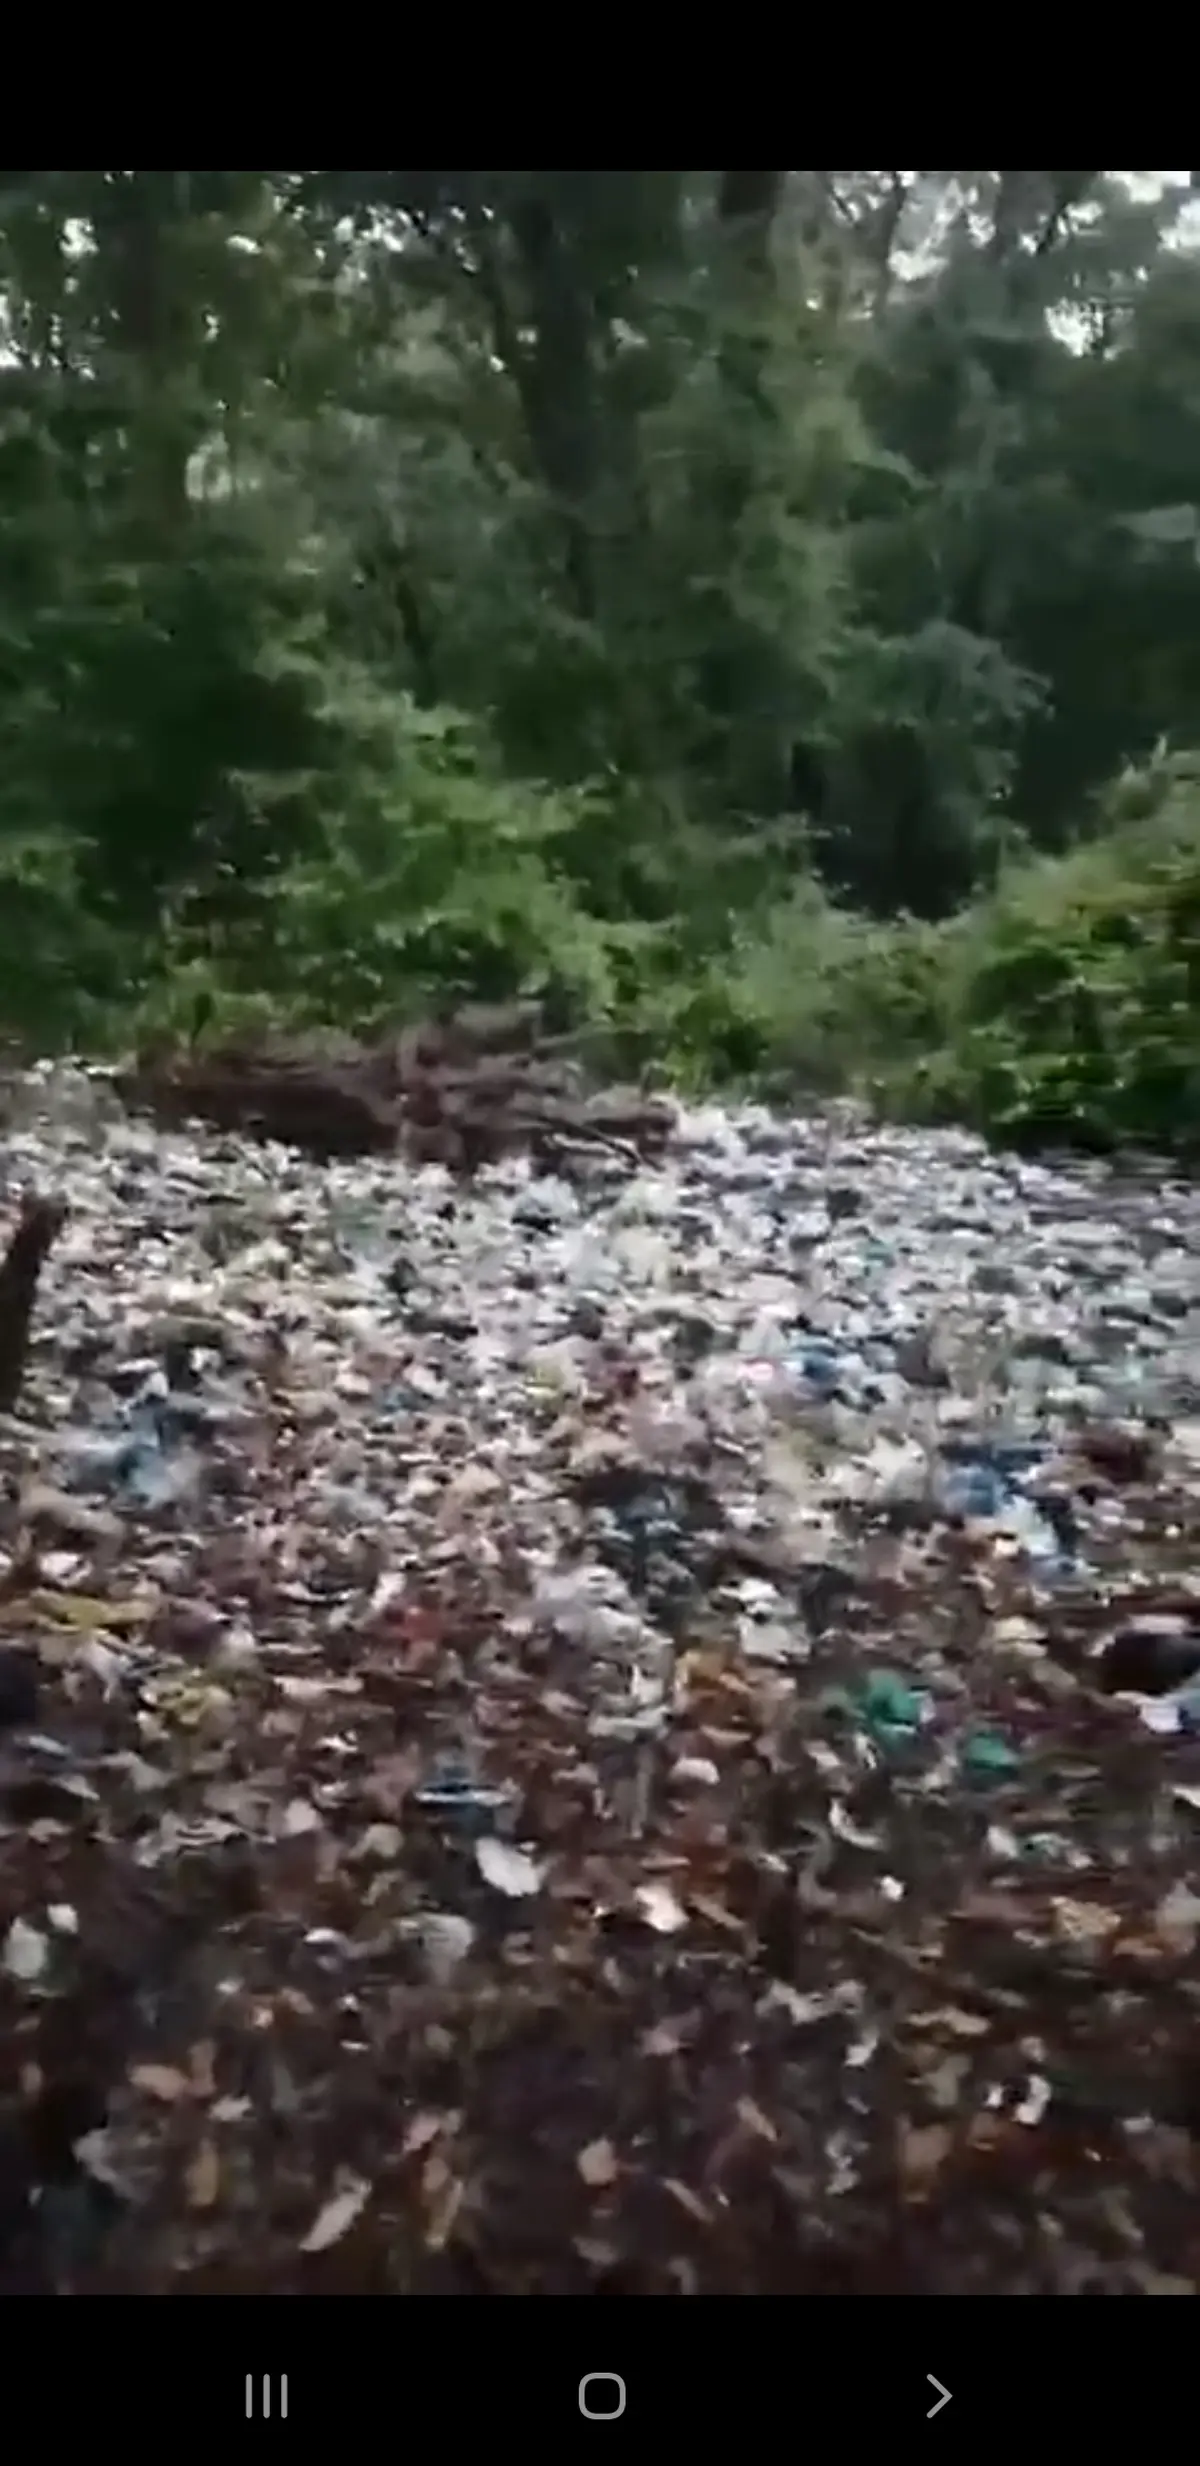 وضعیت زباله در جنگل زرین آباد، مازندران + ویدئو